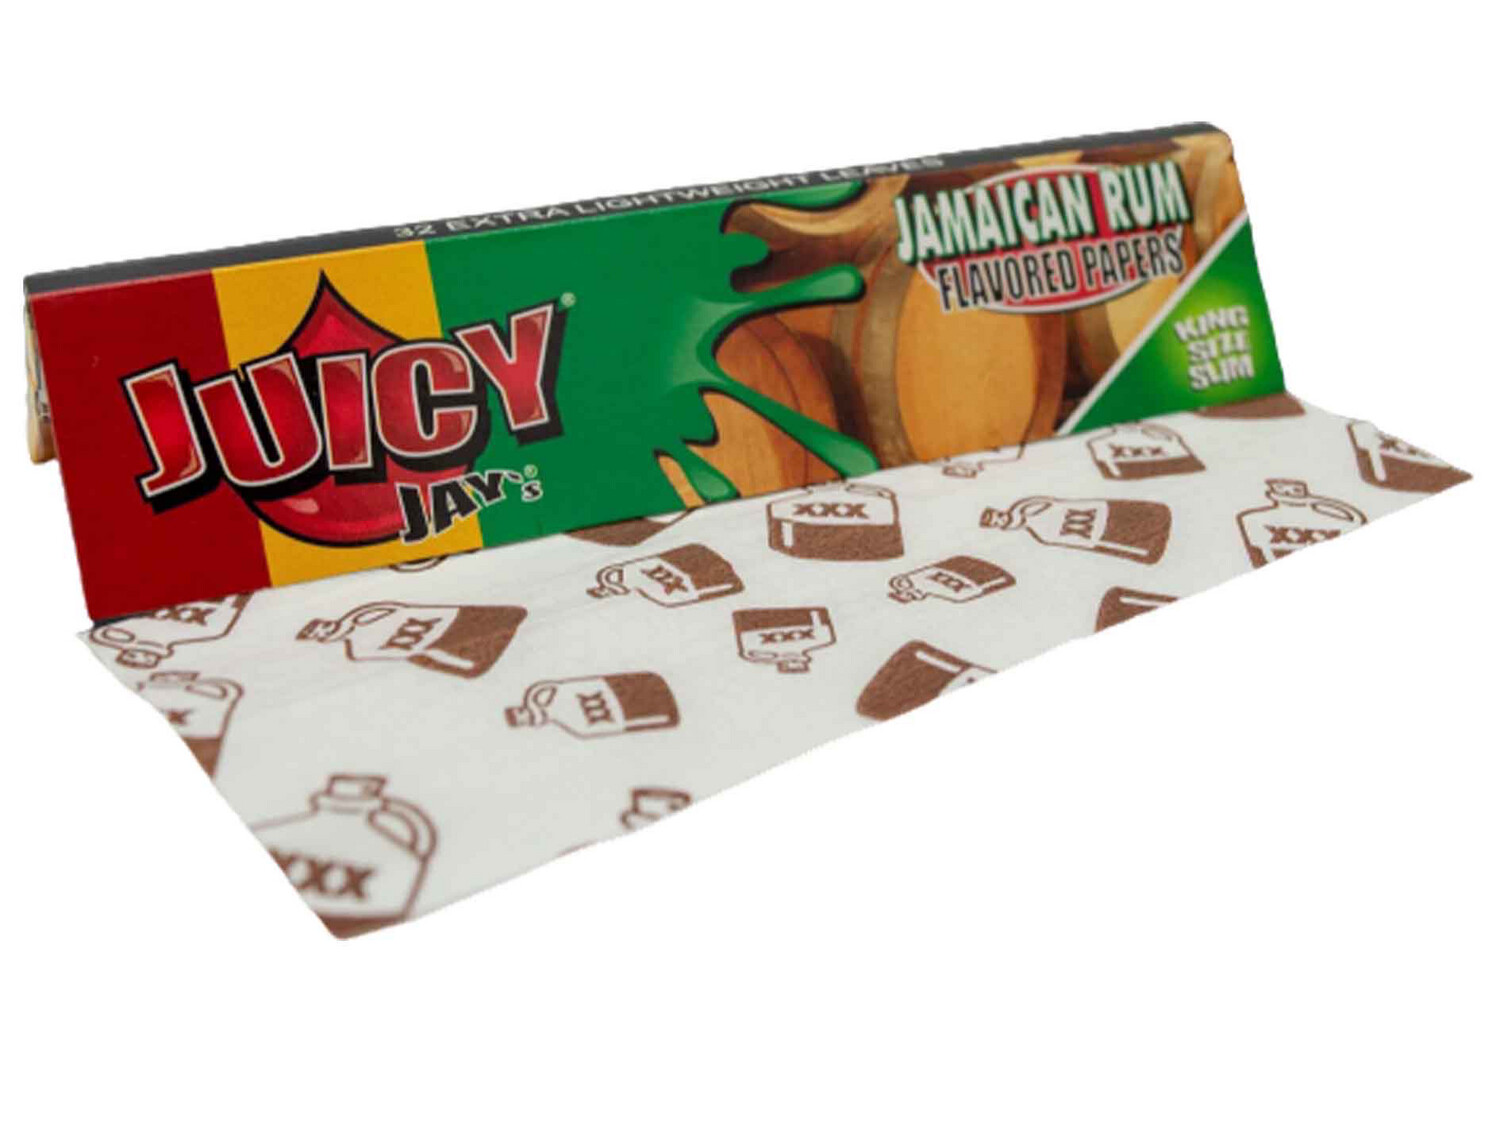 Juicy Jays King Size Premium Jamaican Rum